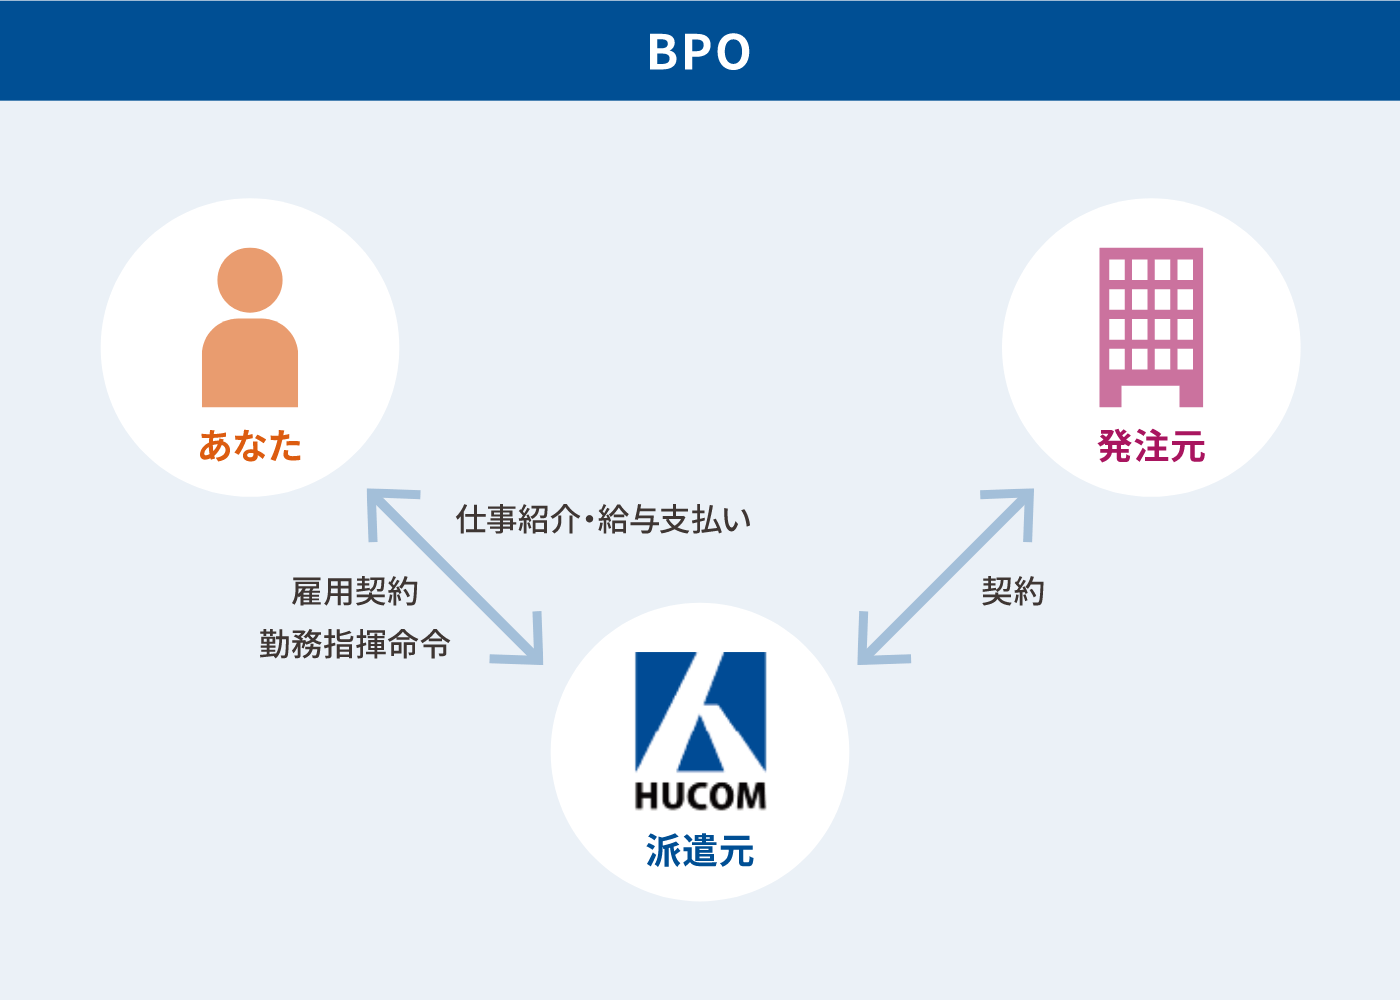 BPOサービスについての説明図